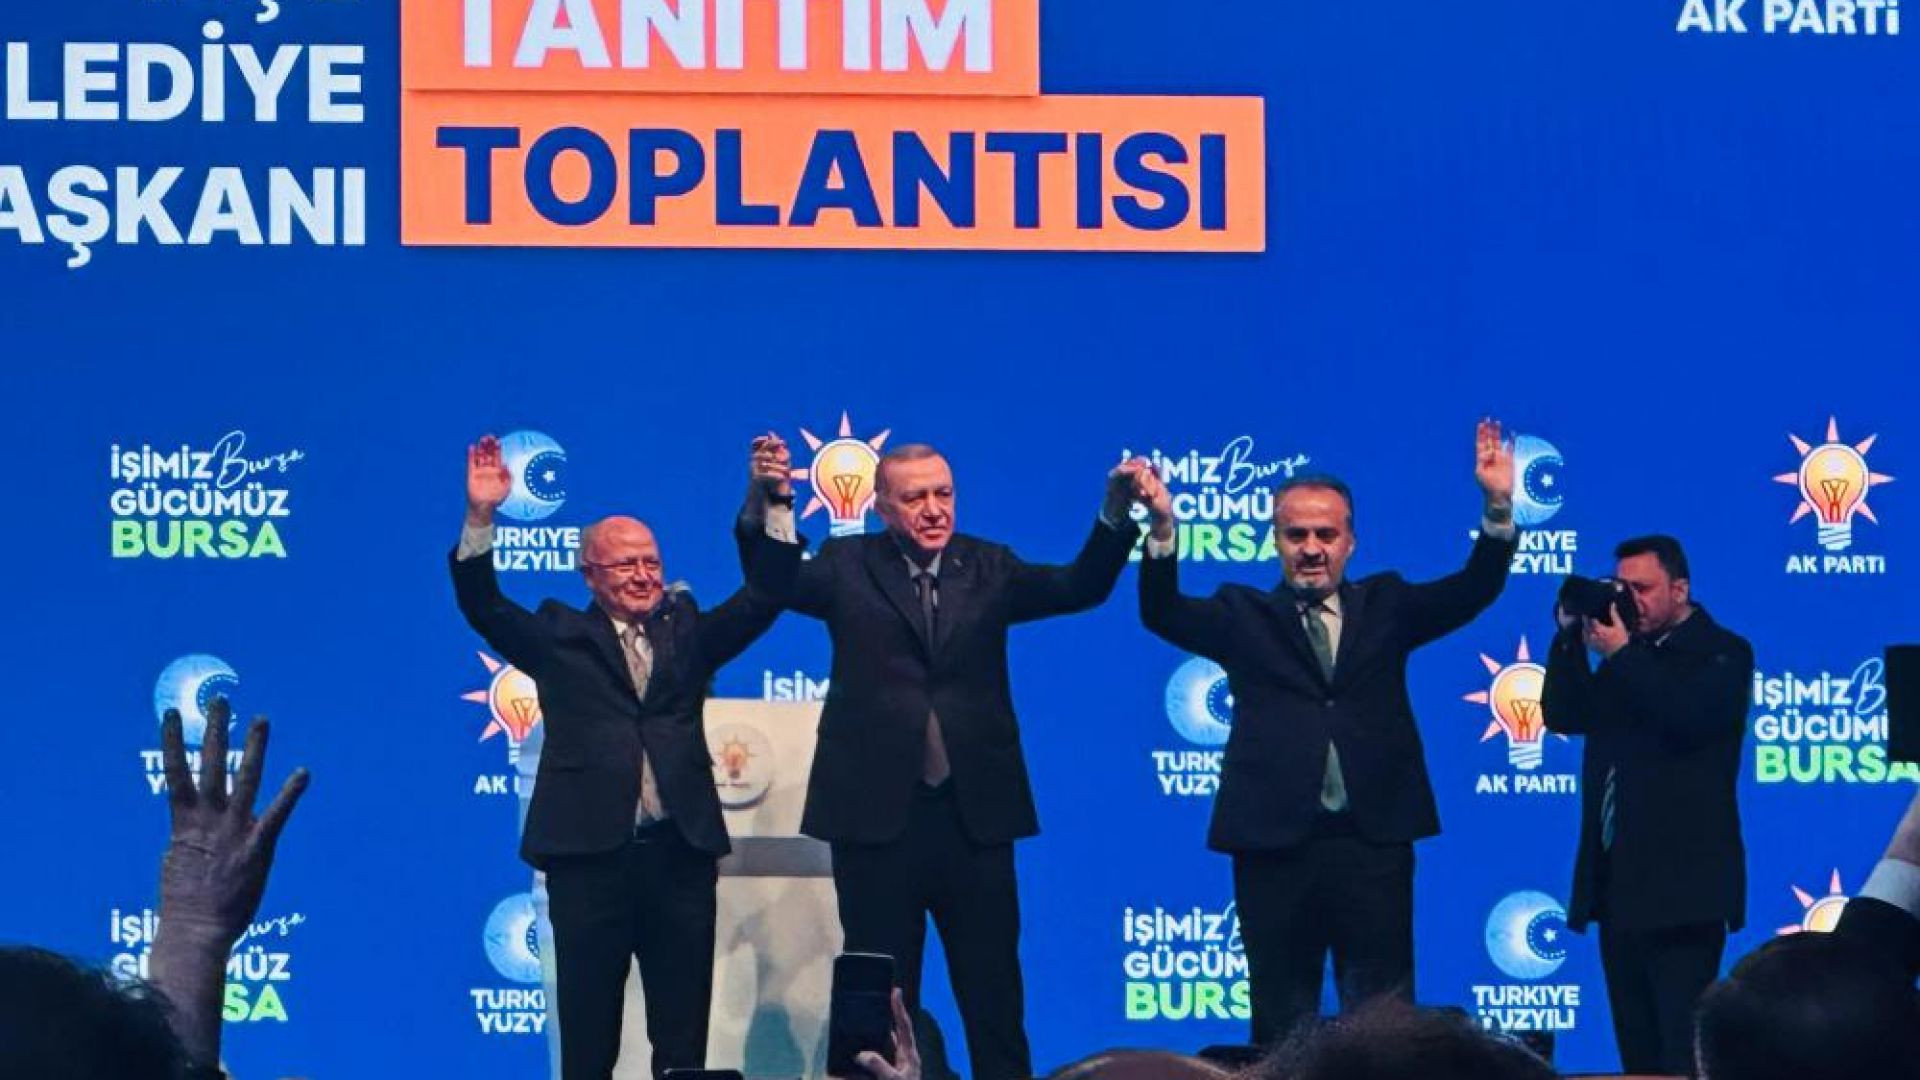 Cumhurbaşkanı Erdoğan, Ak Parti'nin Bursa adaylarını açıkladı!